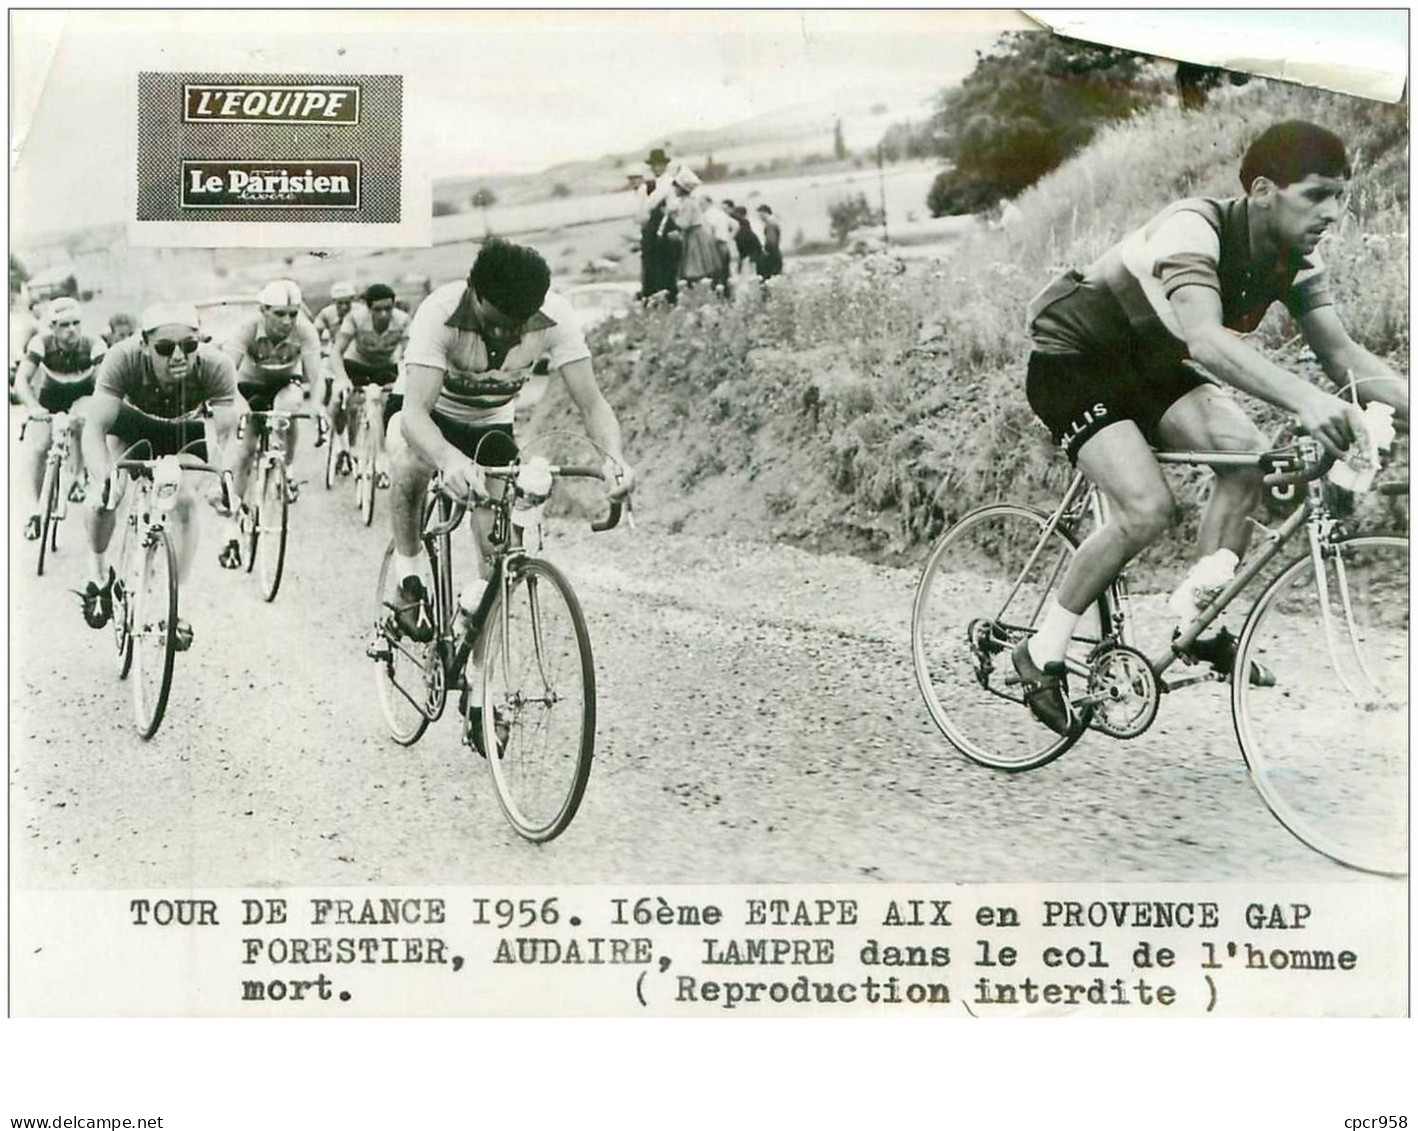 PHOTO DE PRESSE ORIGINALE TOUR DE FRANCE 1956.20X15.16eme ETAPE AIX EN PROVENCE GAP.FORESTIER,AUDAIRE,LAMPRE DAN.n°18695 - Cyclisme